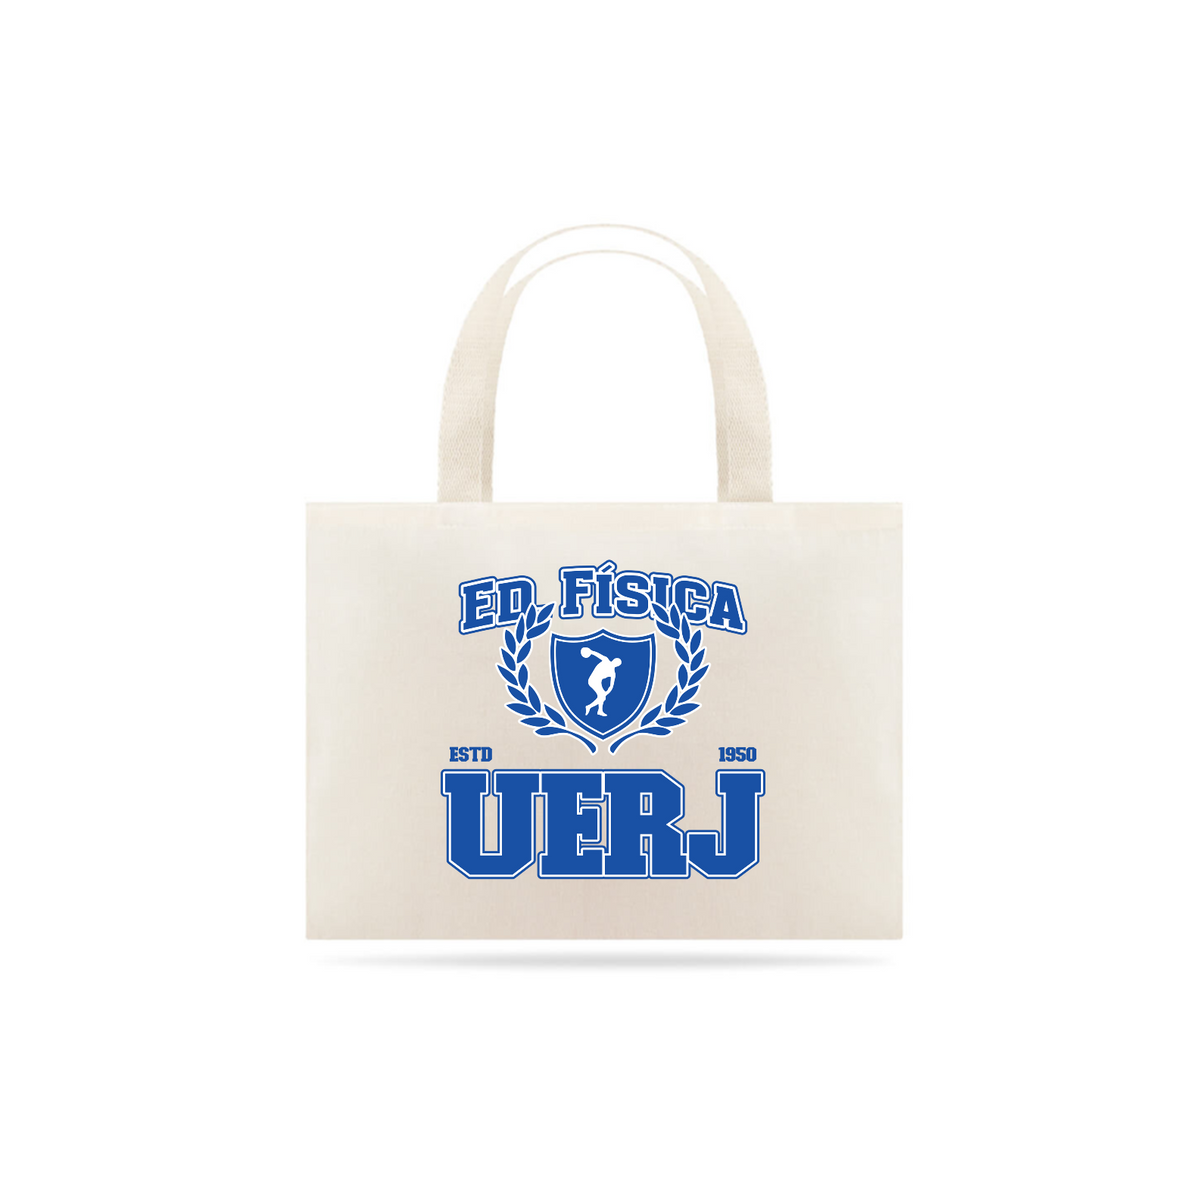 Nome do produto: UniVerso - Ecobag Educação Física UERJ 